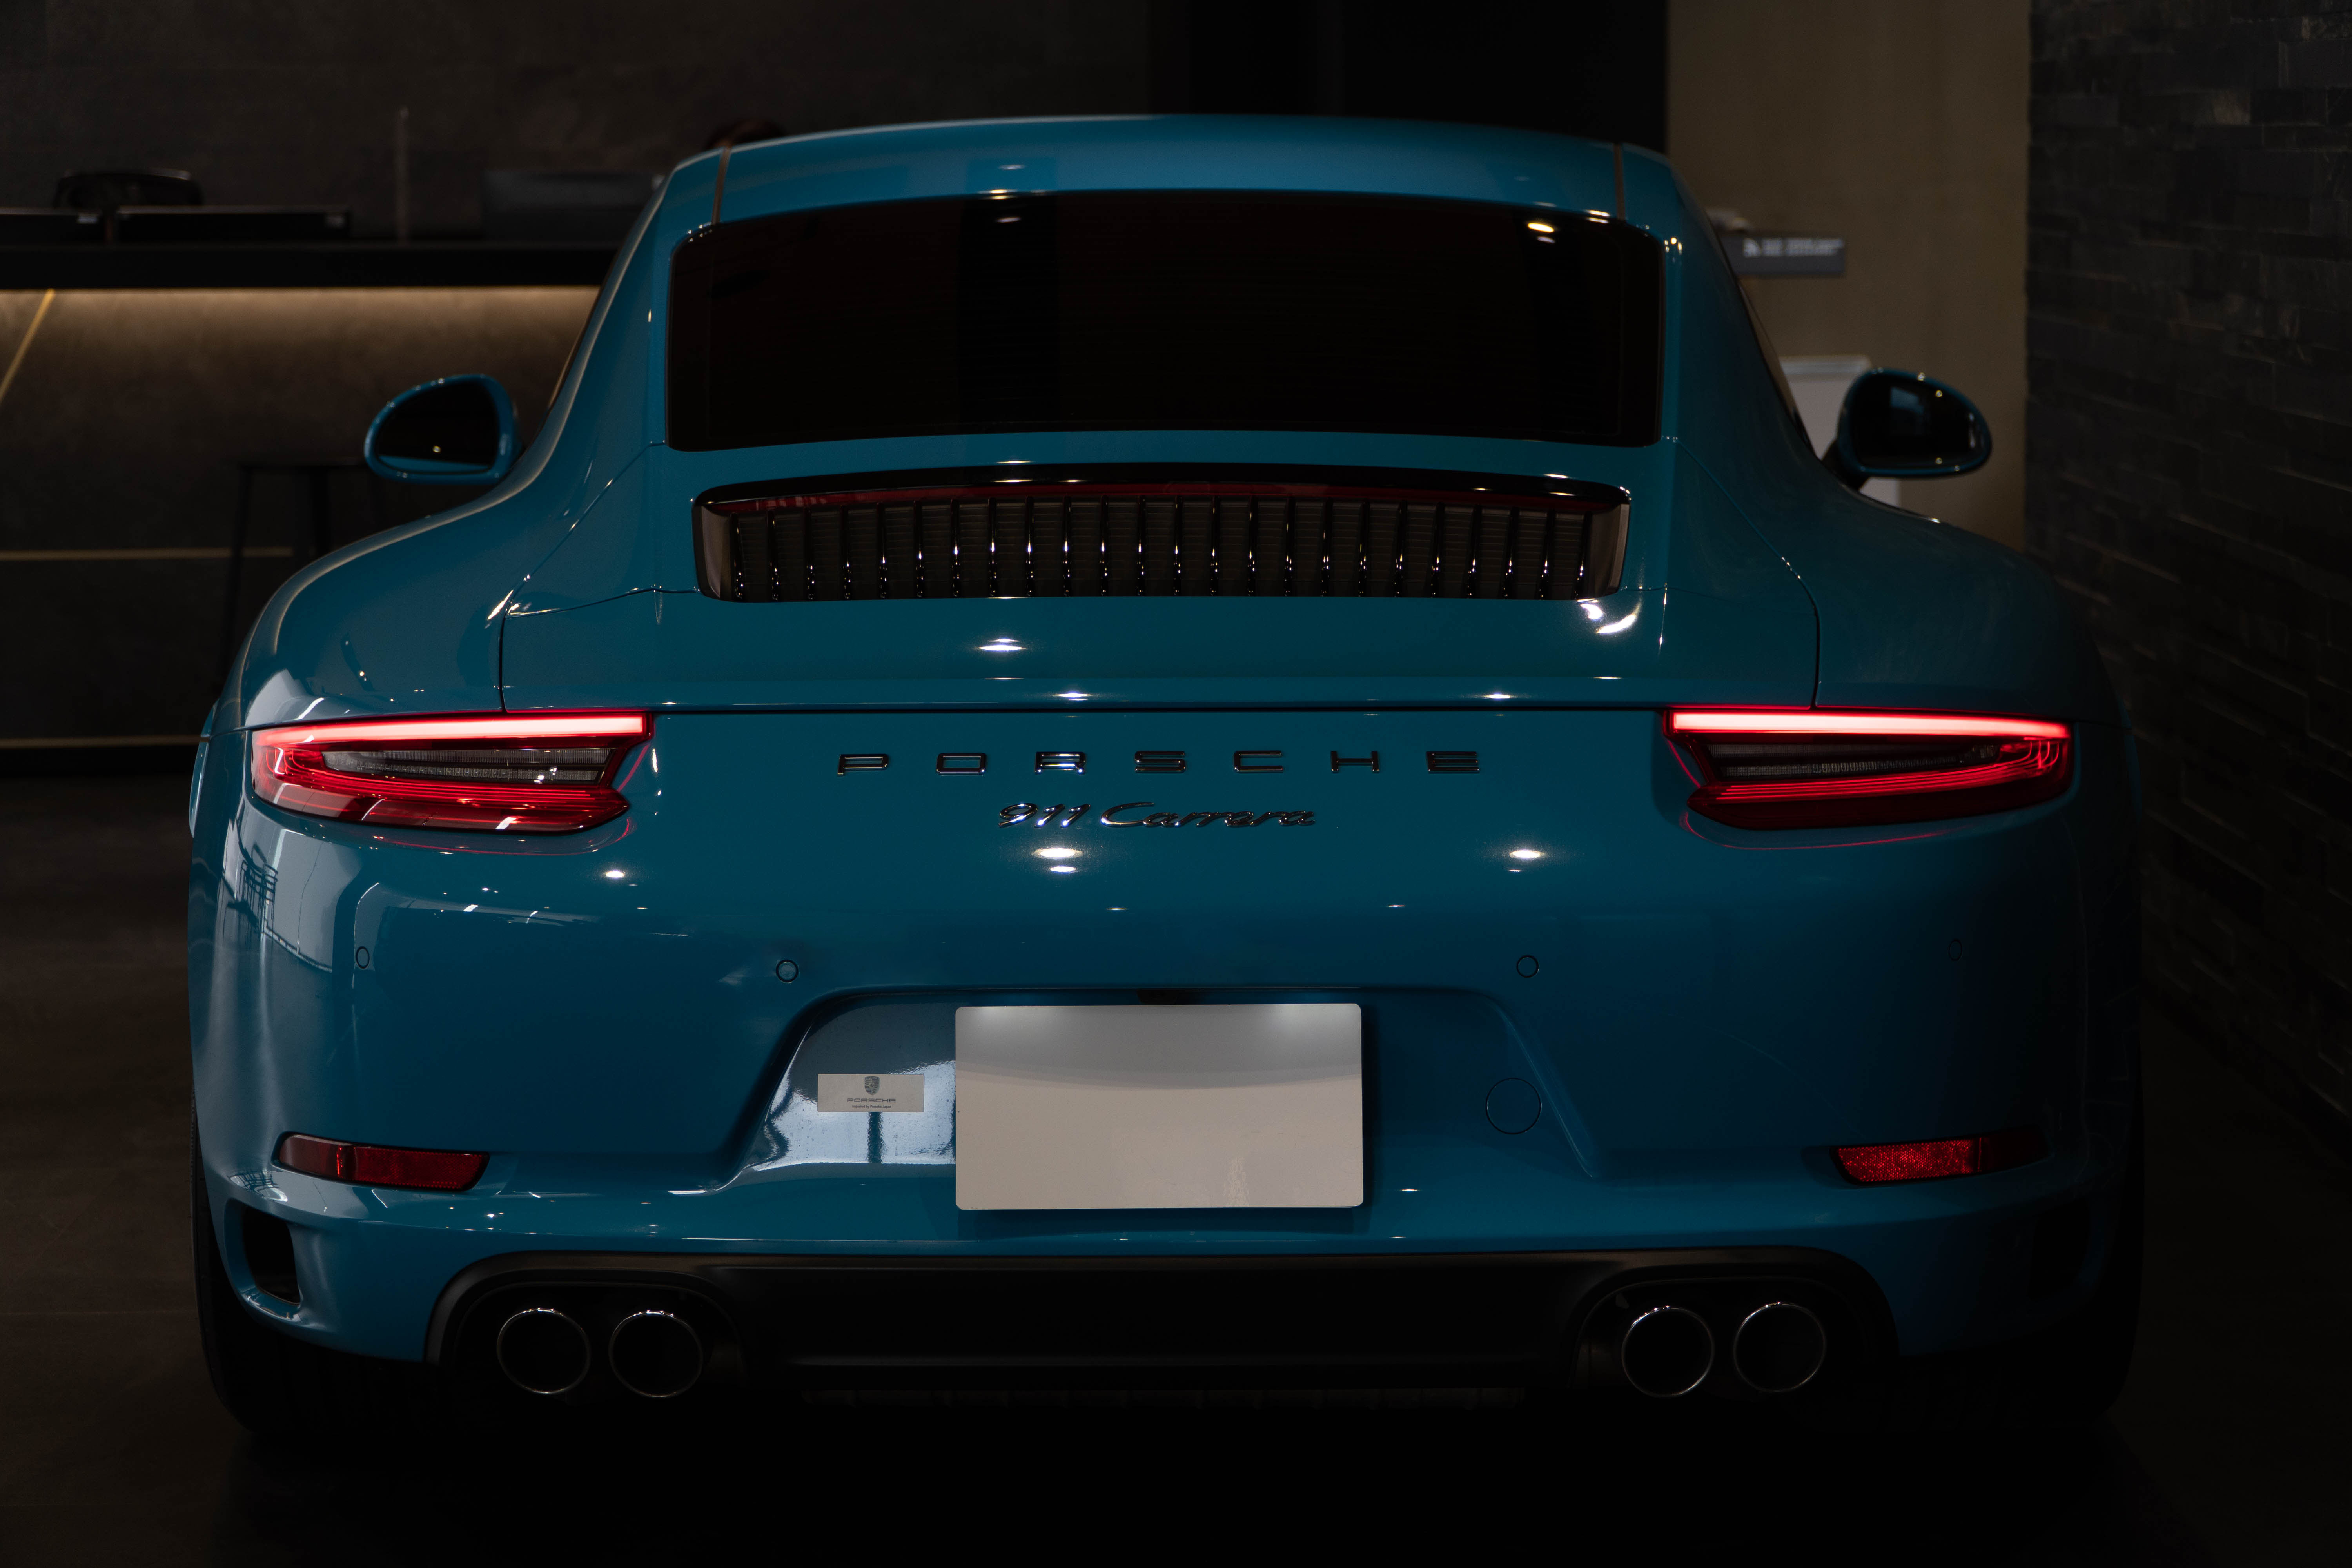 2017 Porsche 911 null